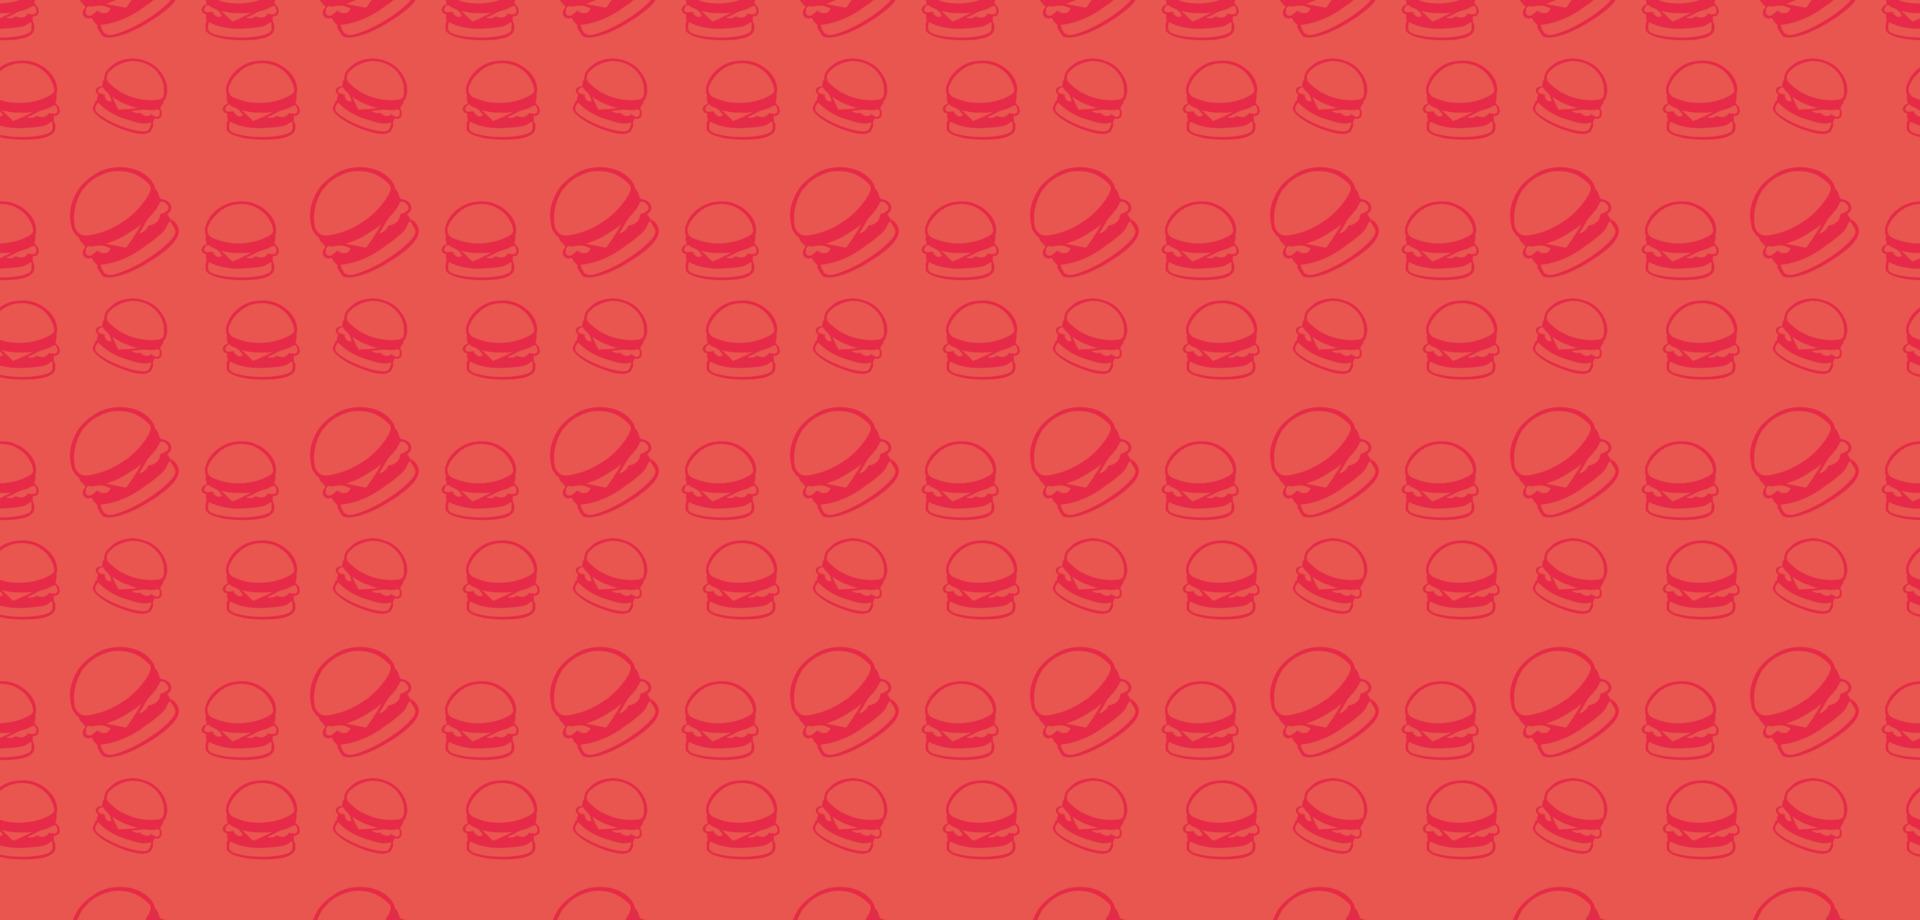 vektor illustration av mat banner med hamburgare mönster siluett